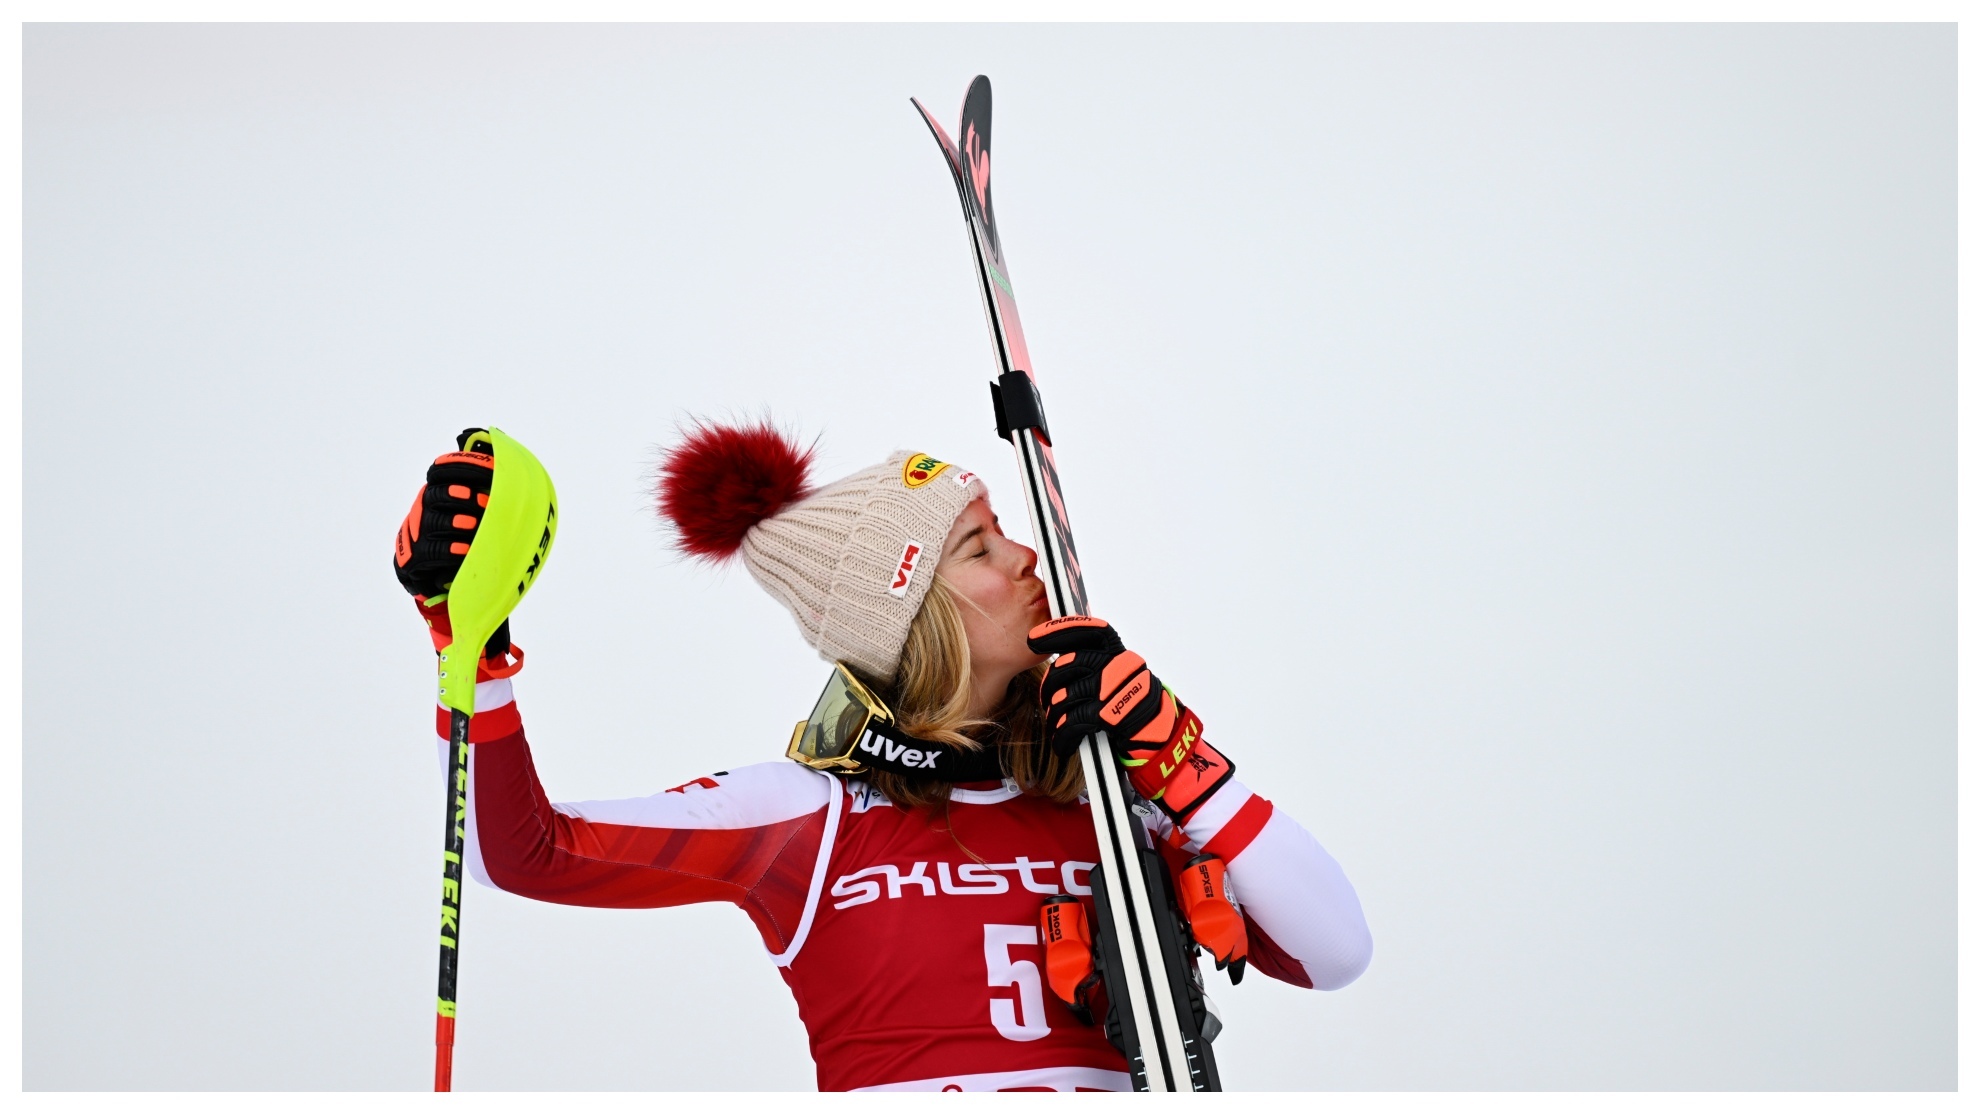 Liensberger besa el esquí tras ganar en Are